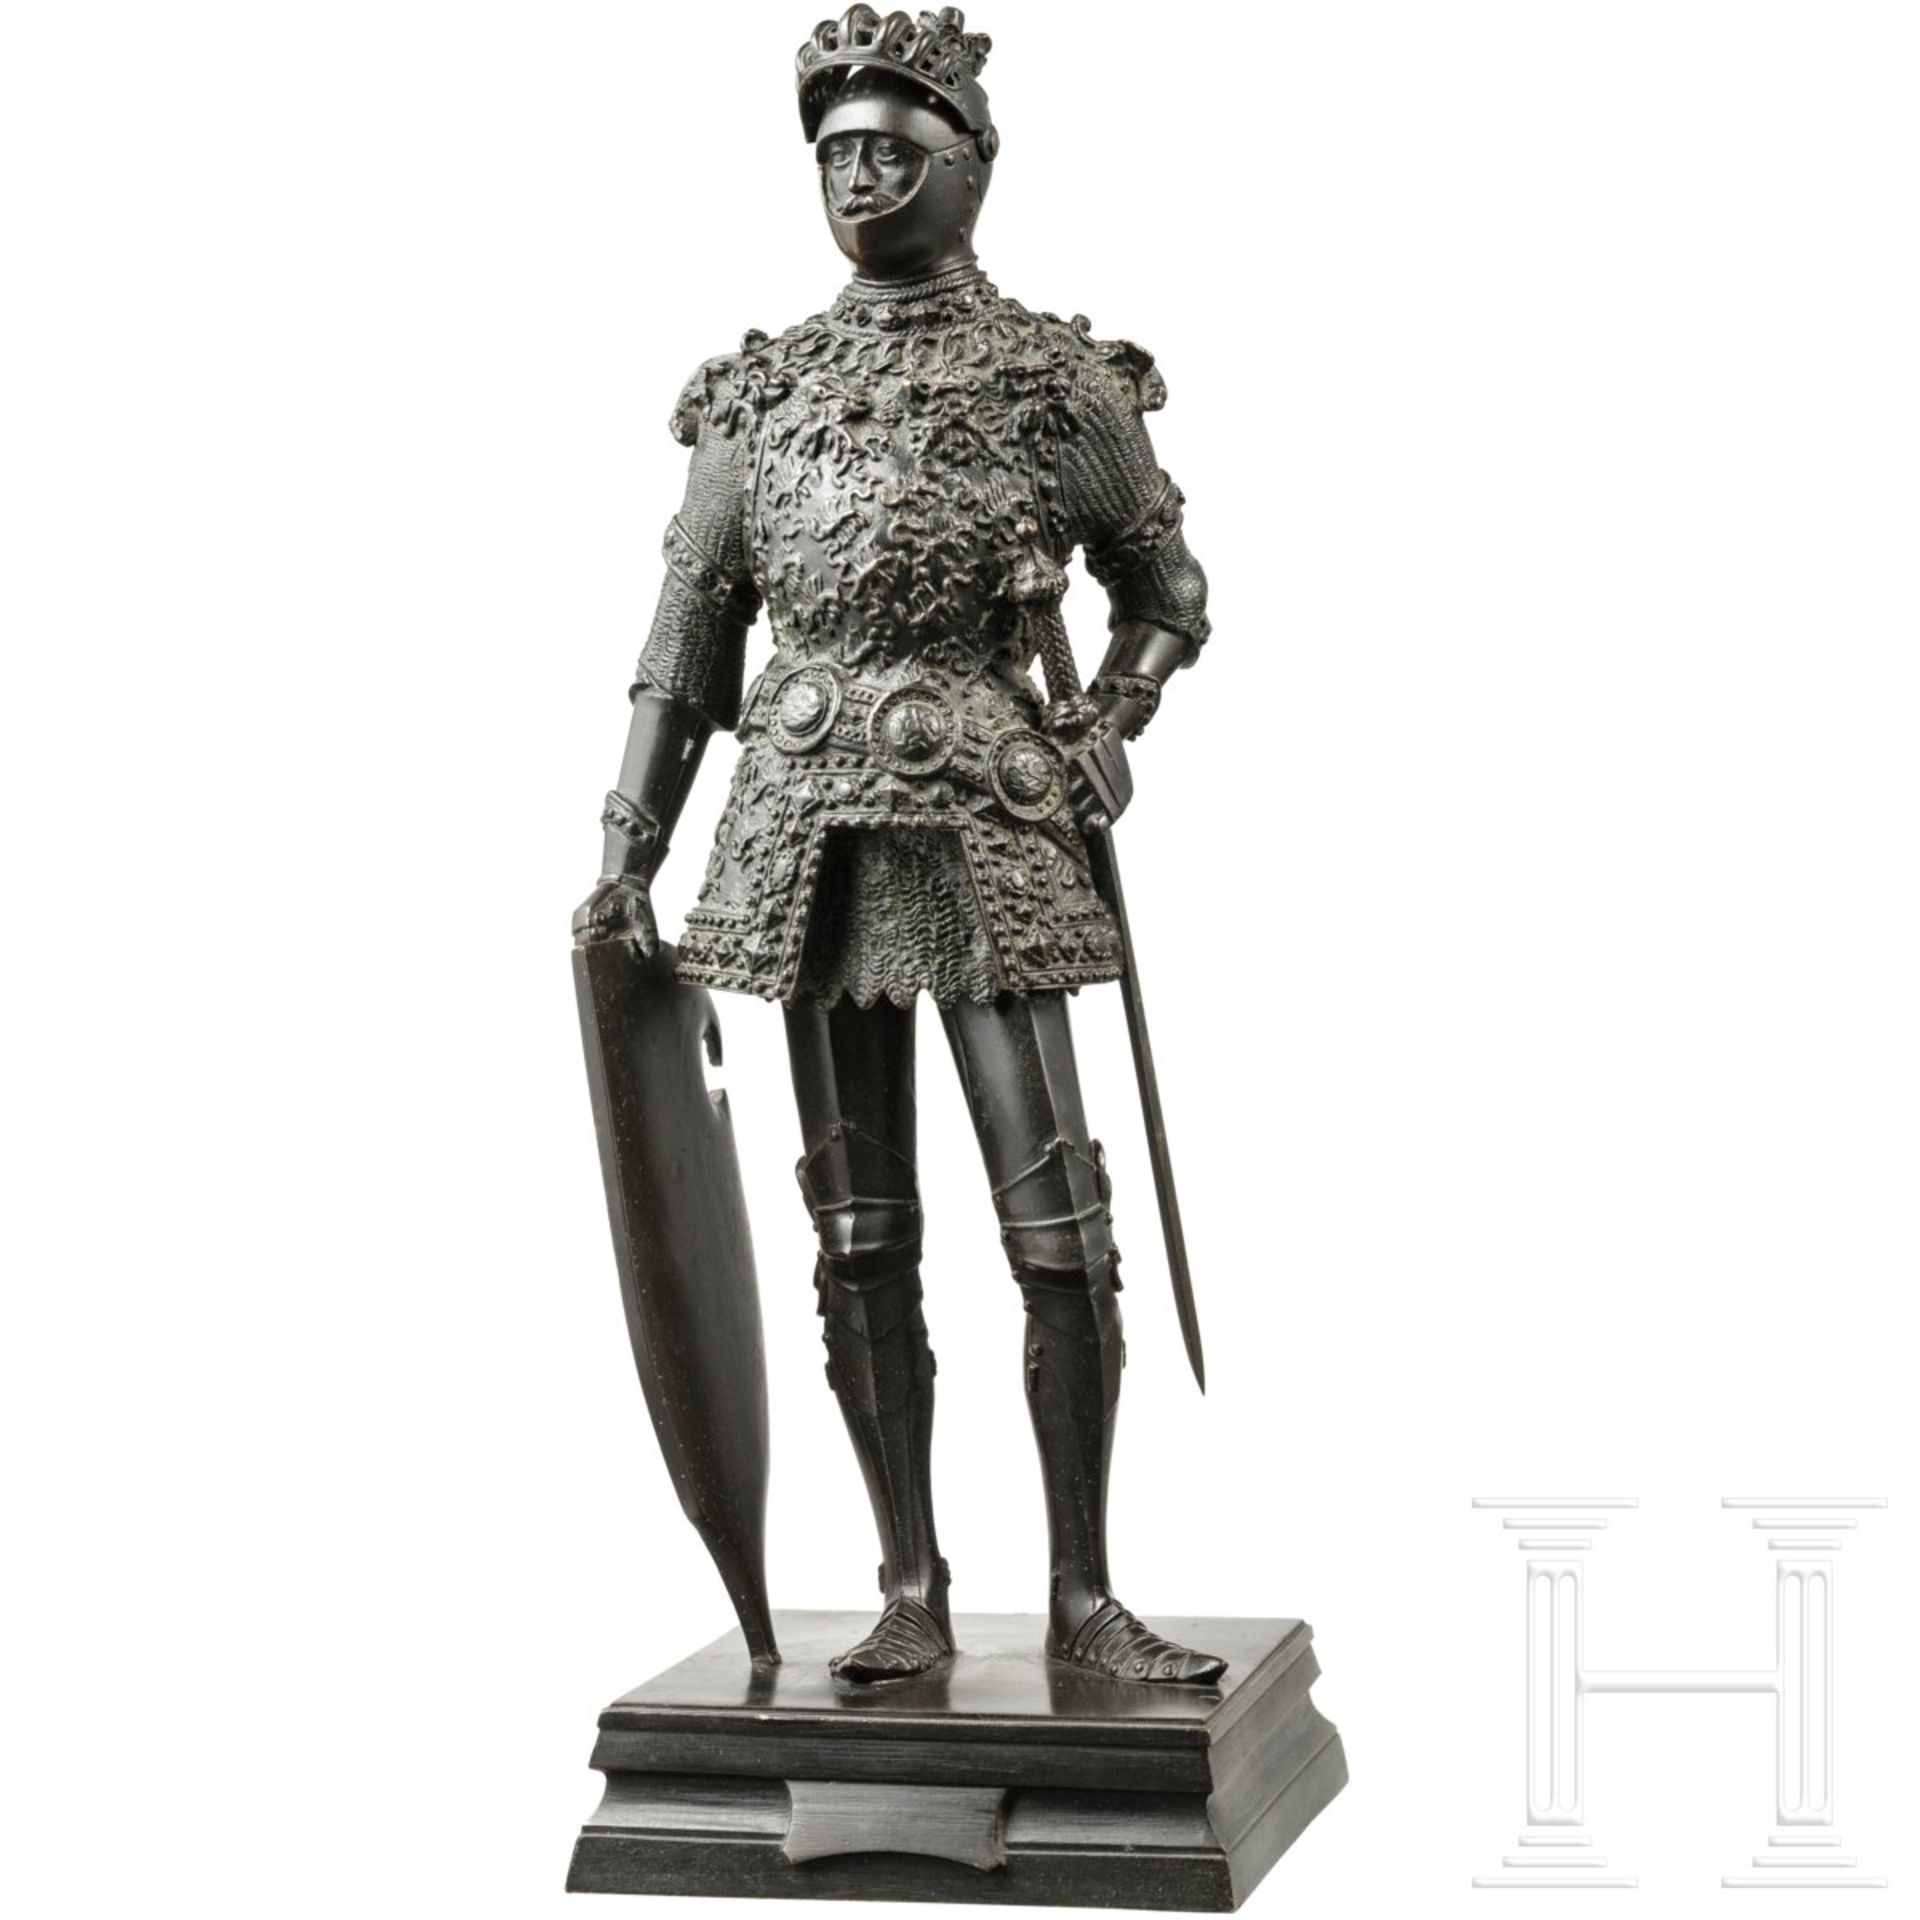 Arthur, König von England - Bronzefigur nach der Innsbrucker Hofkirche, 20. Jhdt. - Bild 2 aus 5